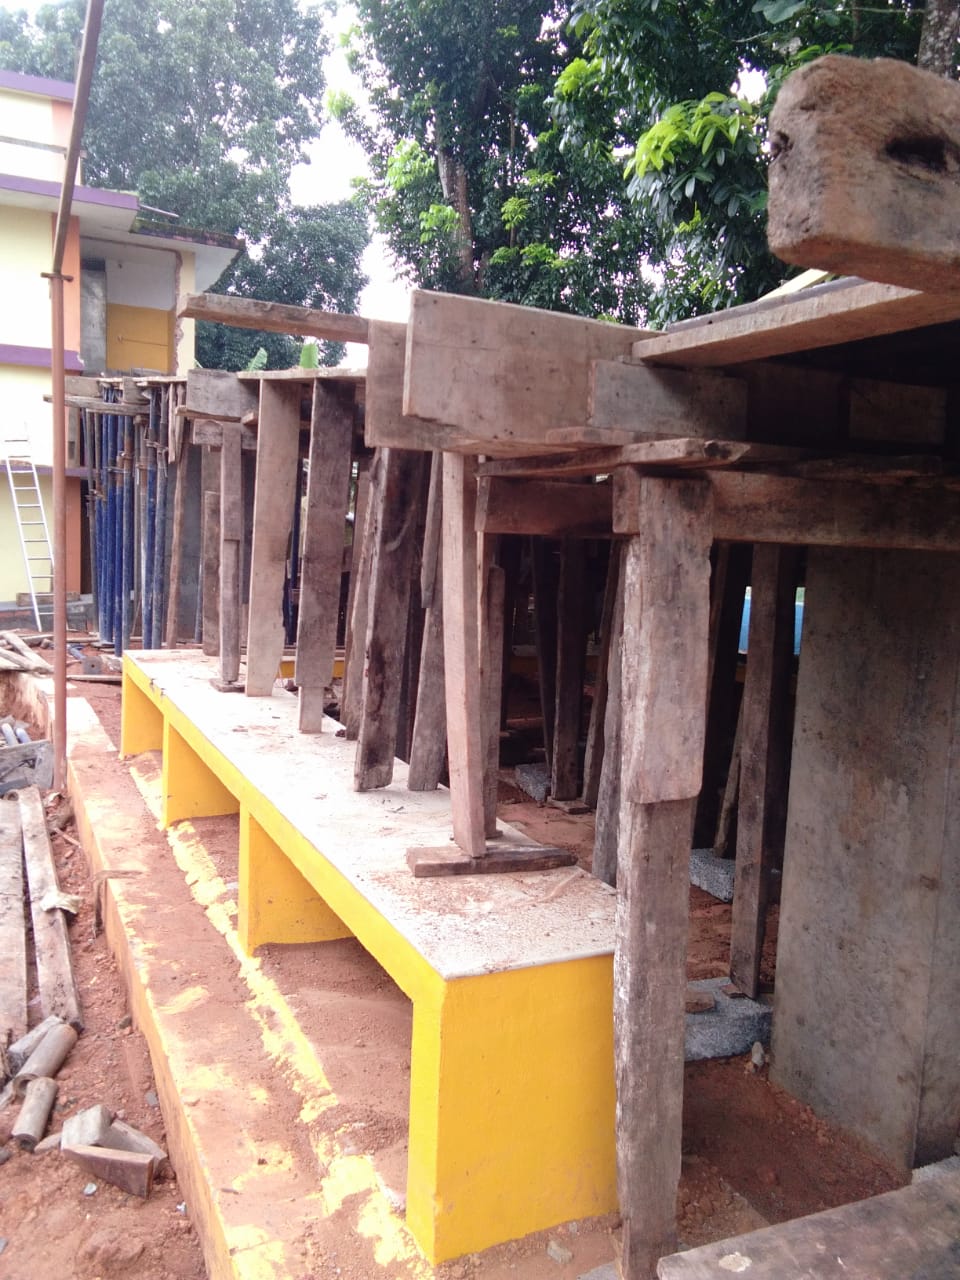 Alphons Sadhan Schule - Bau einer Rampe für den barrierefreien Zugang, gefördert durch die Stiftung